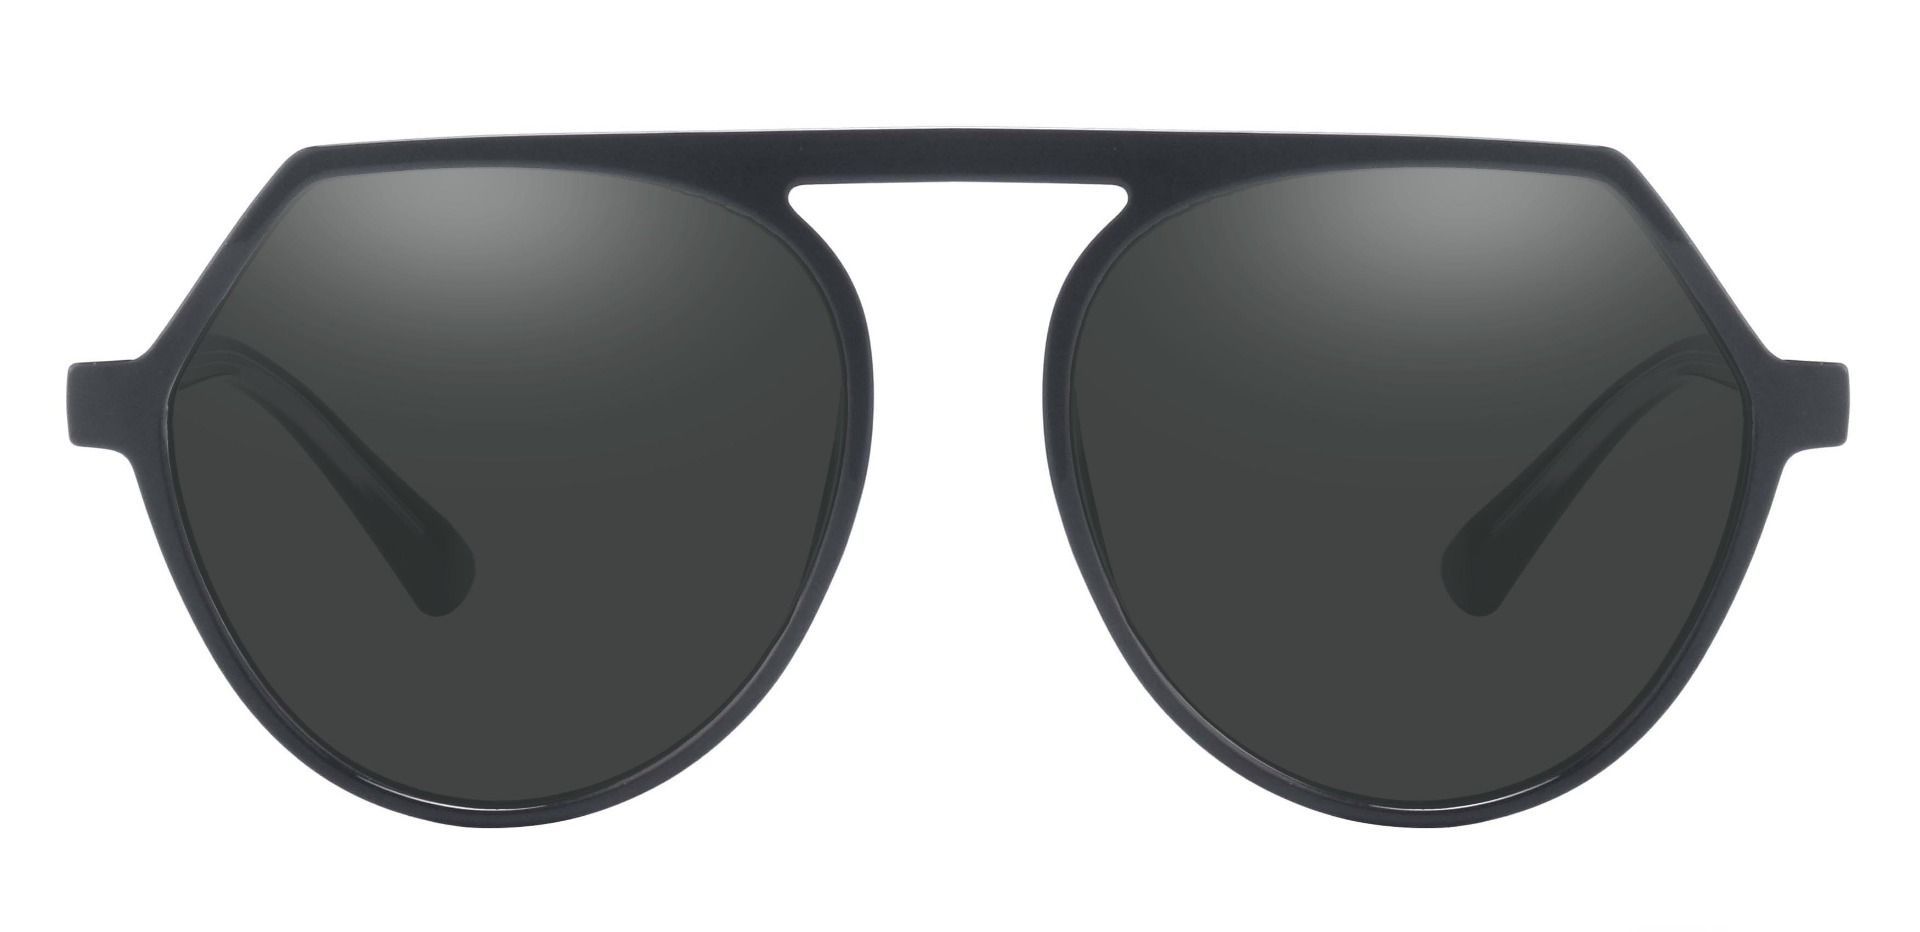 Cascade Aviator Prescription Sunglasses - Black Frame With Gray Lenses ...